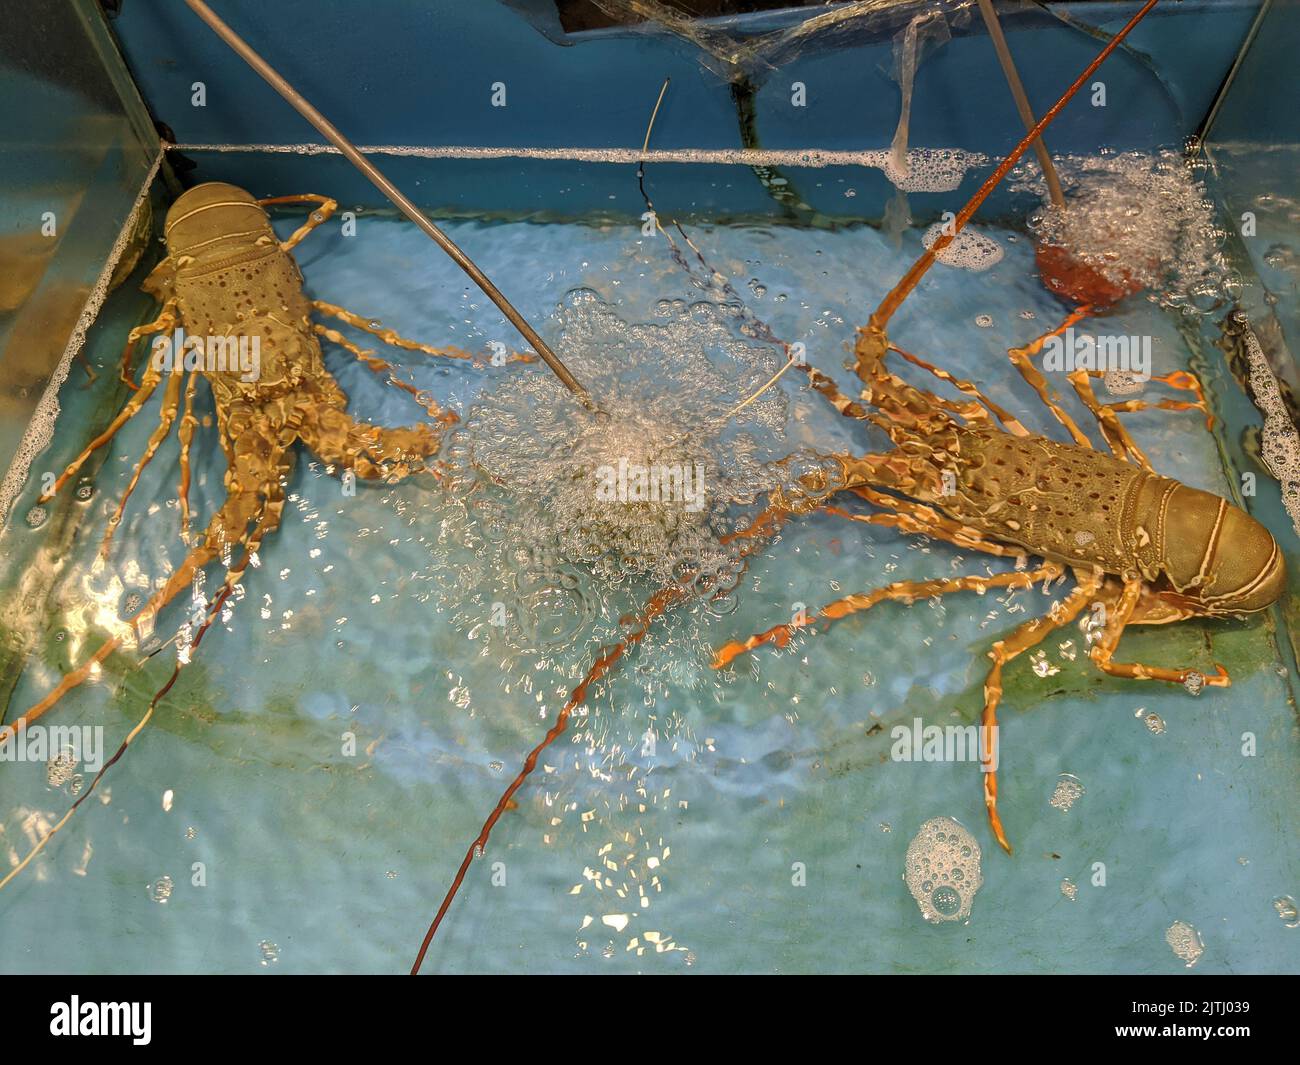 Aragoste in una vasca d'acqua in un ristorante di pesce, Phuket, Thailandia Foto Stock